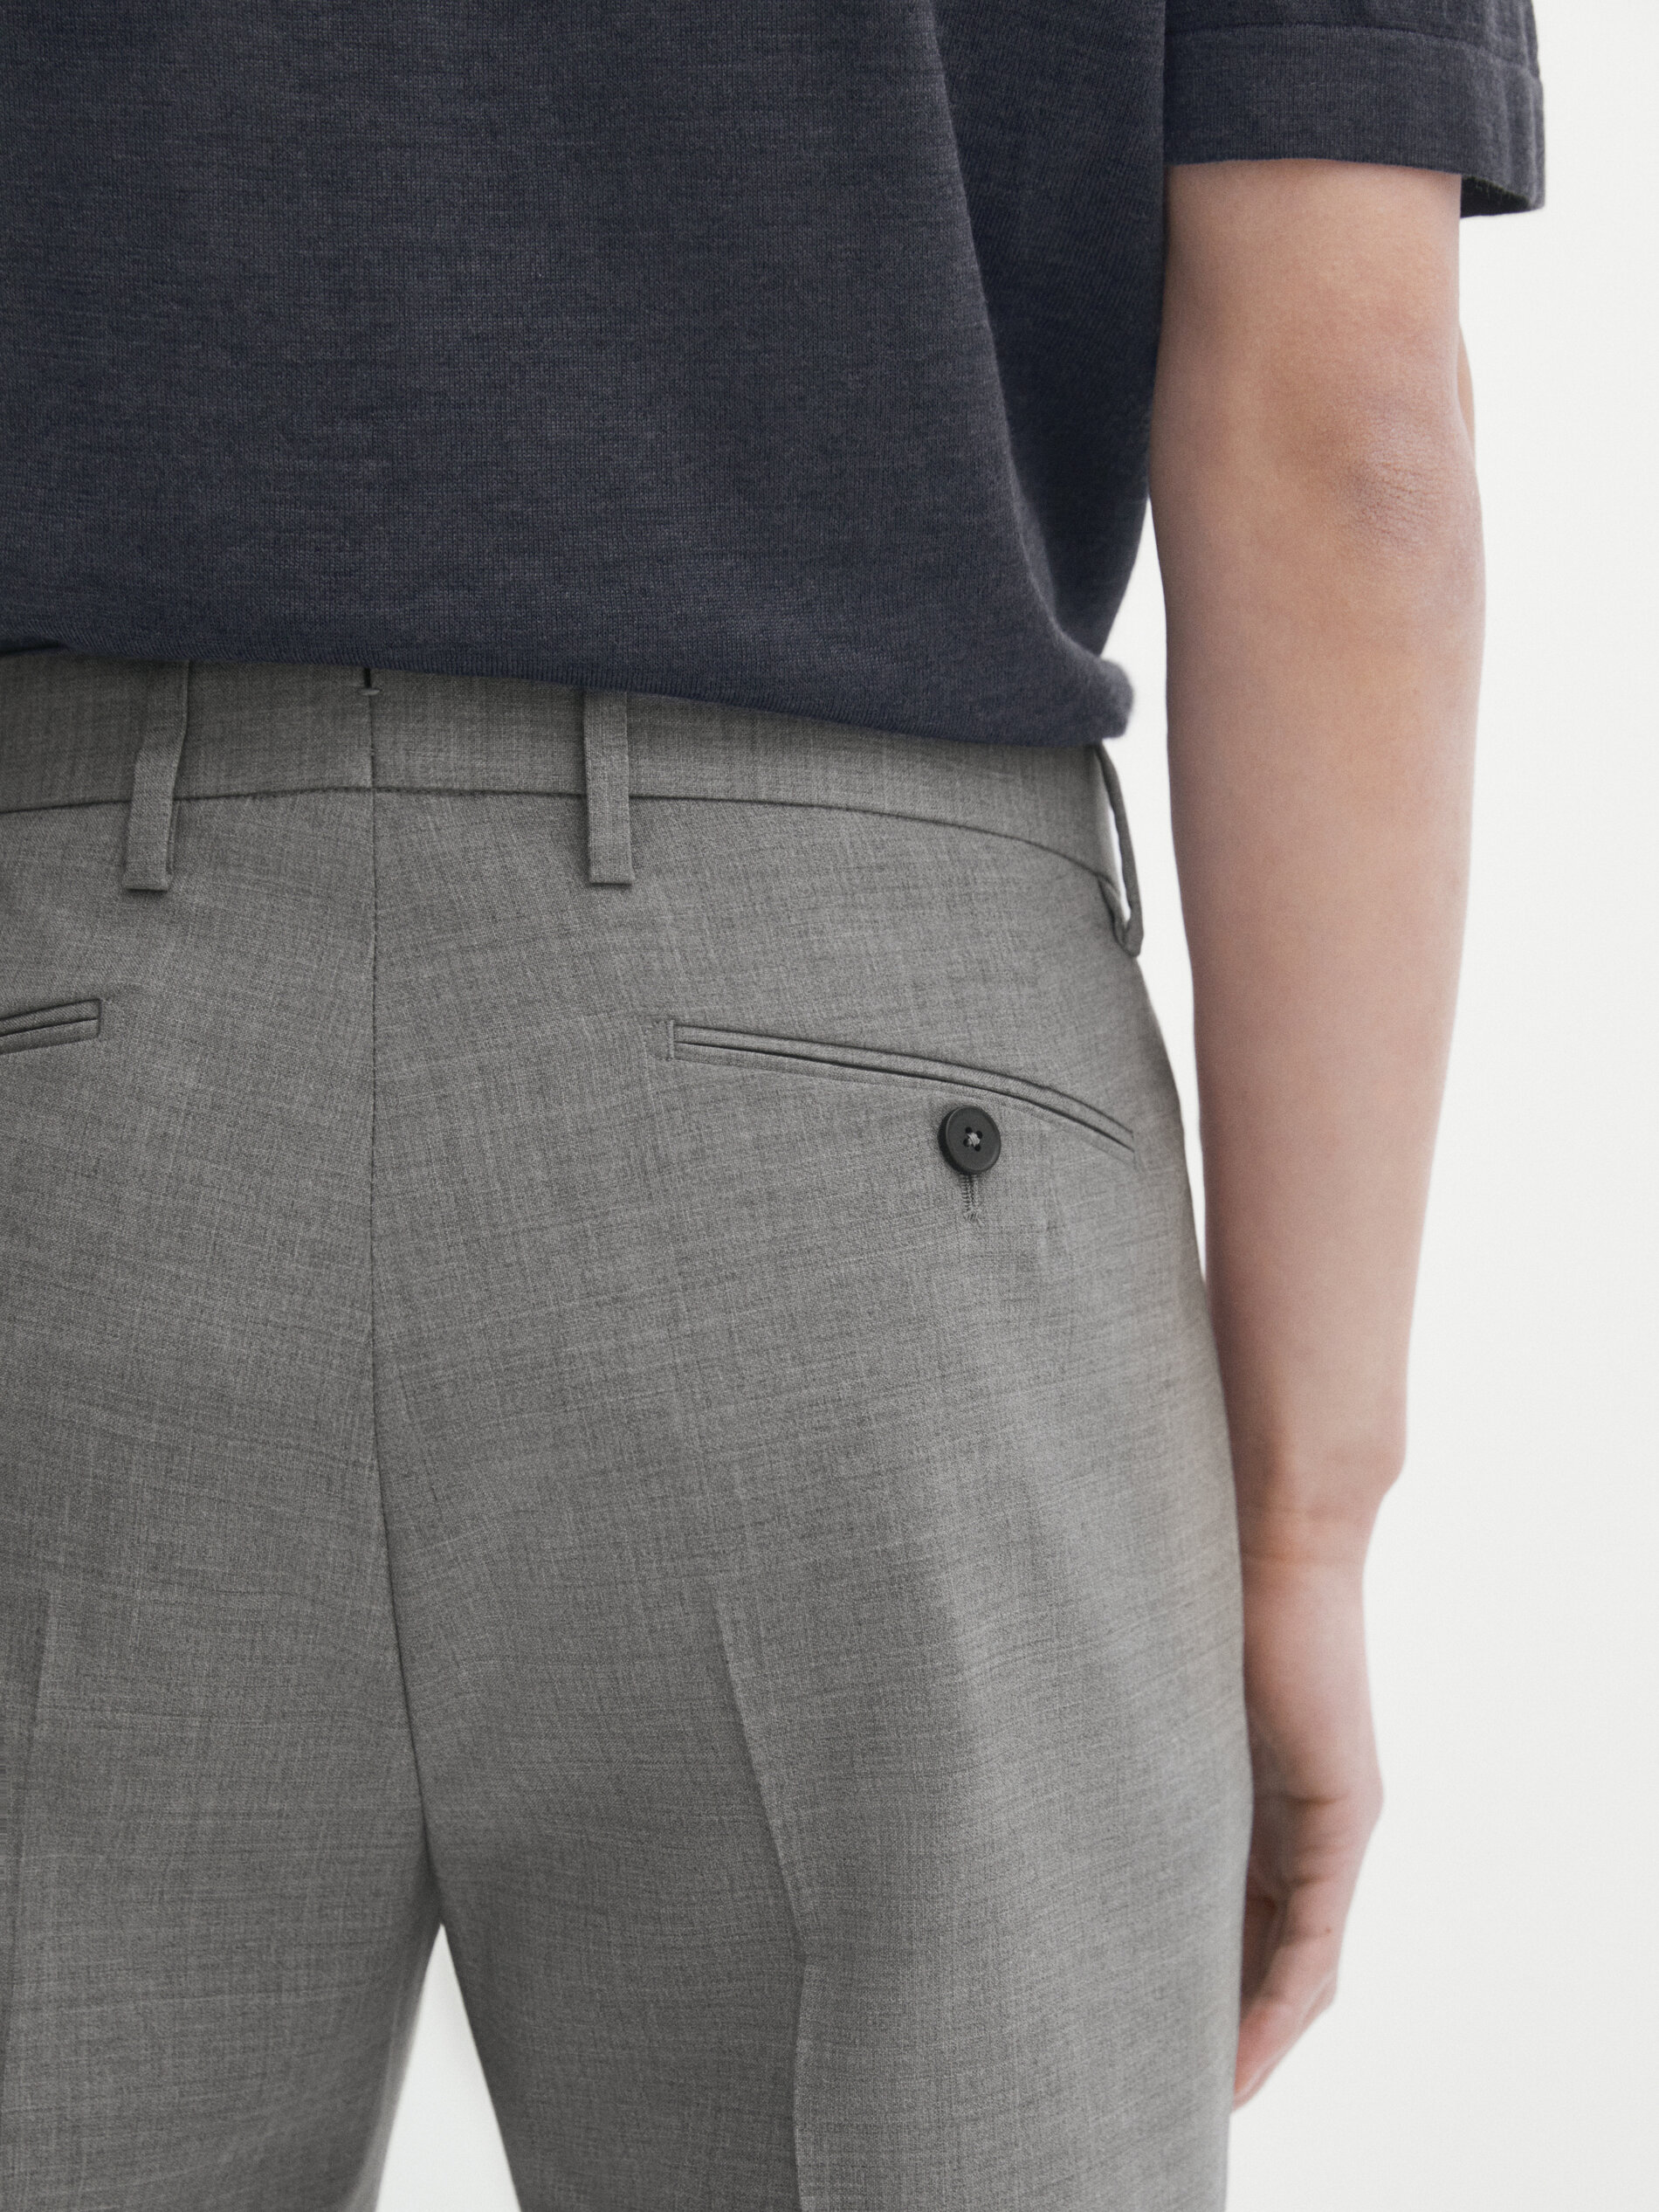 Pantalón traje gris 100% lana